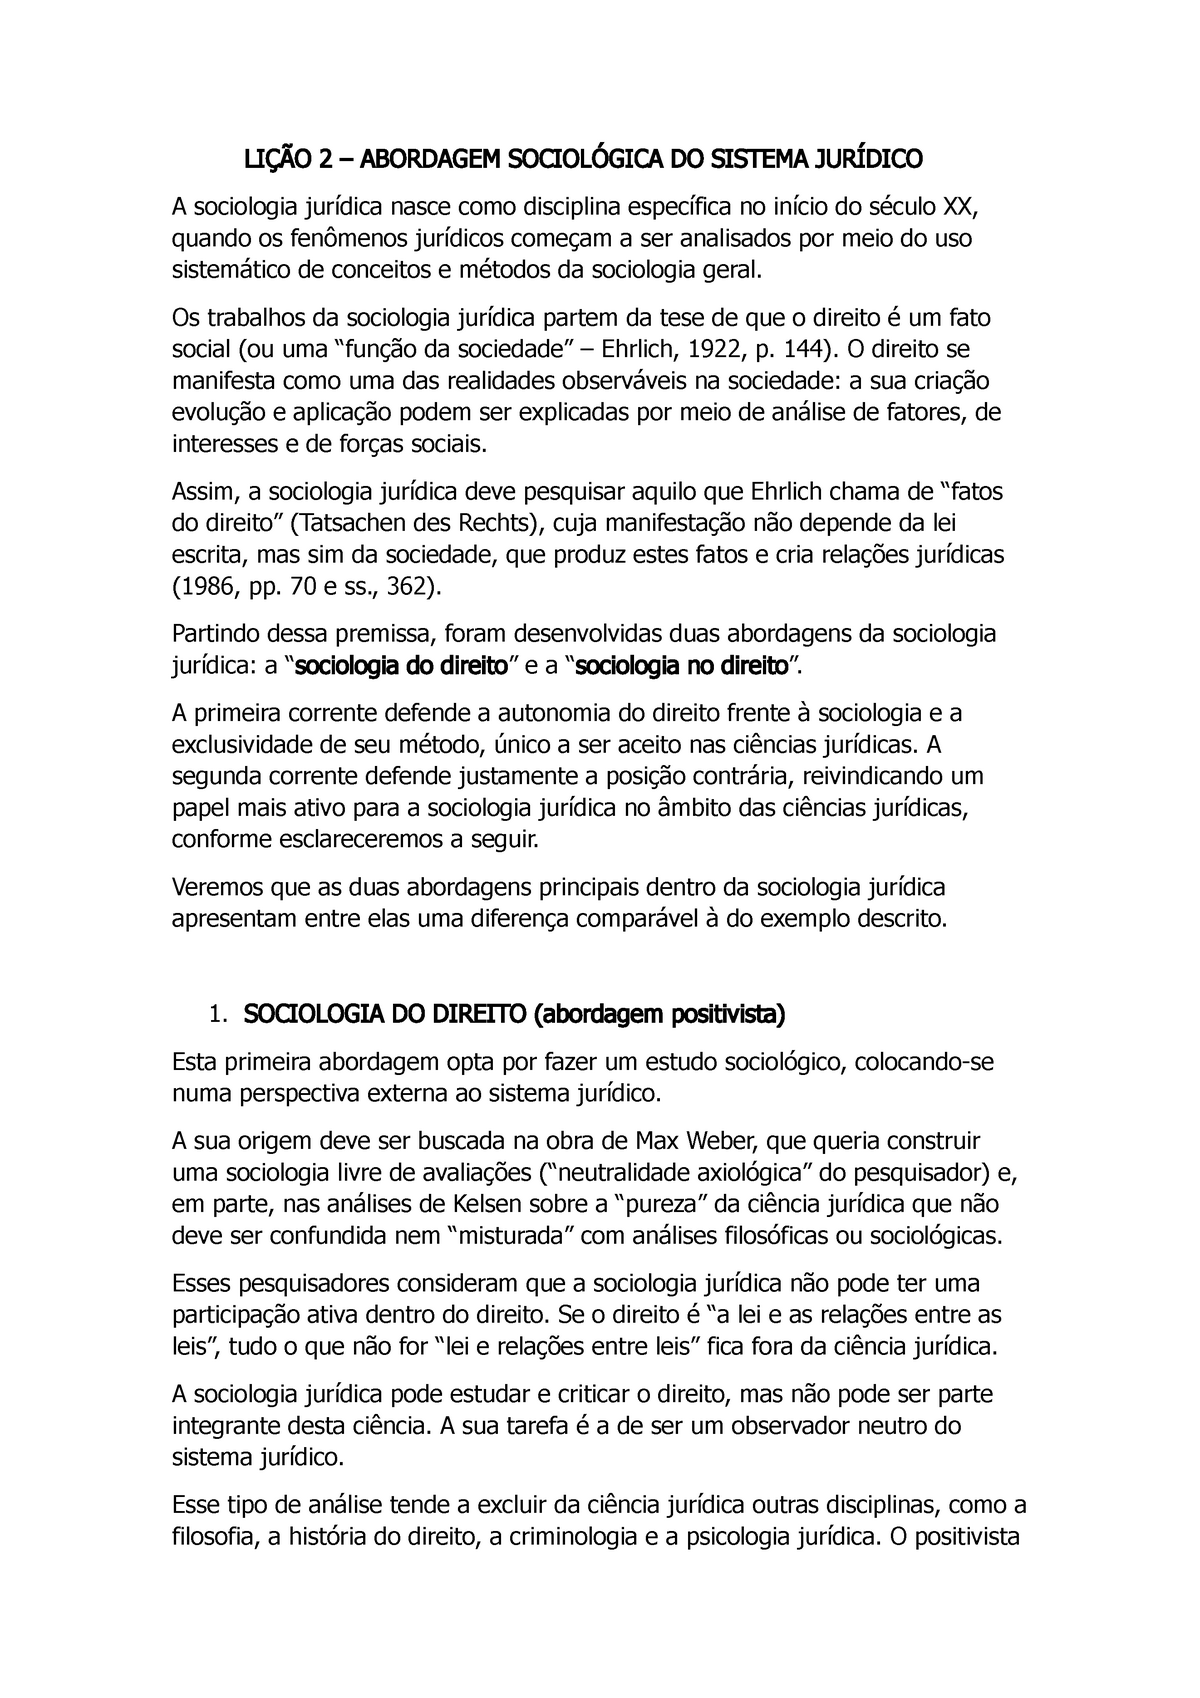 Resumo Lição 03 Manual De Sociologia Jurídica Ana Lucia Sabadell 2 Abordagem Do Sistema A 4355